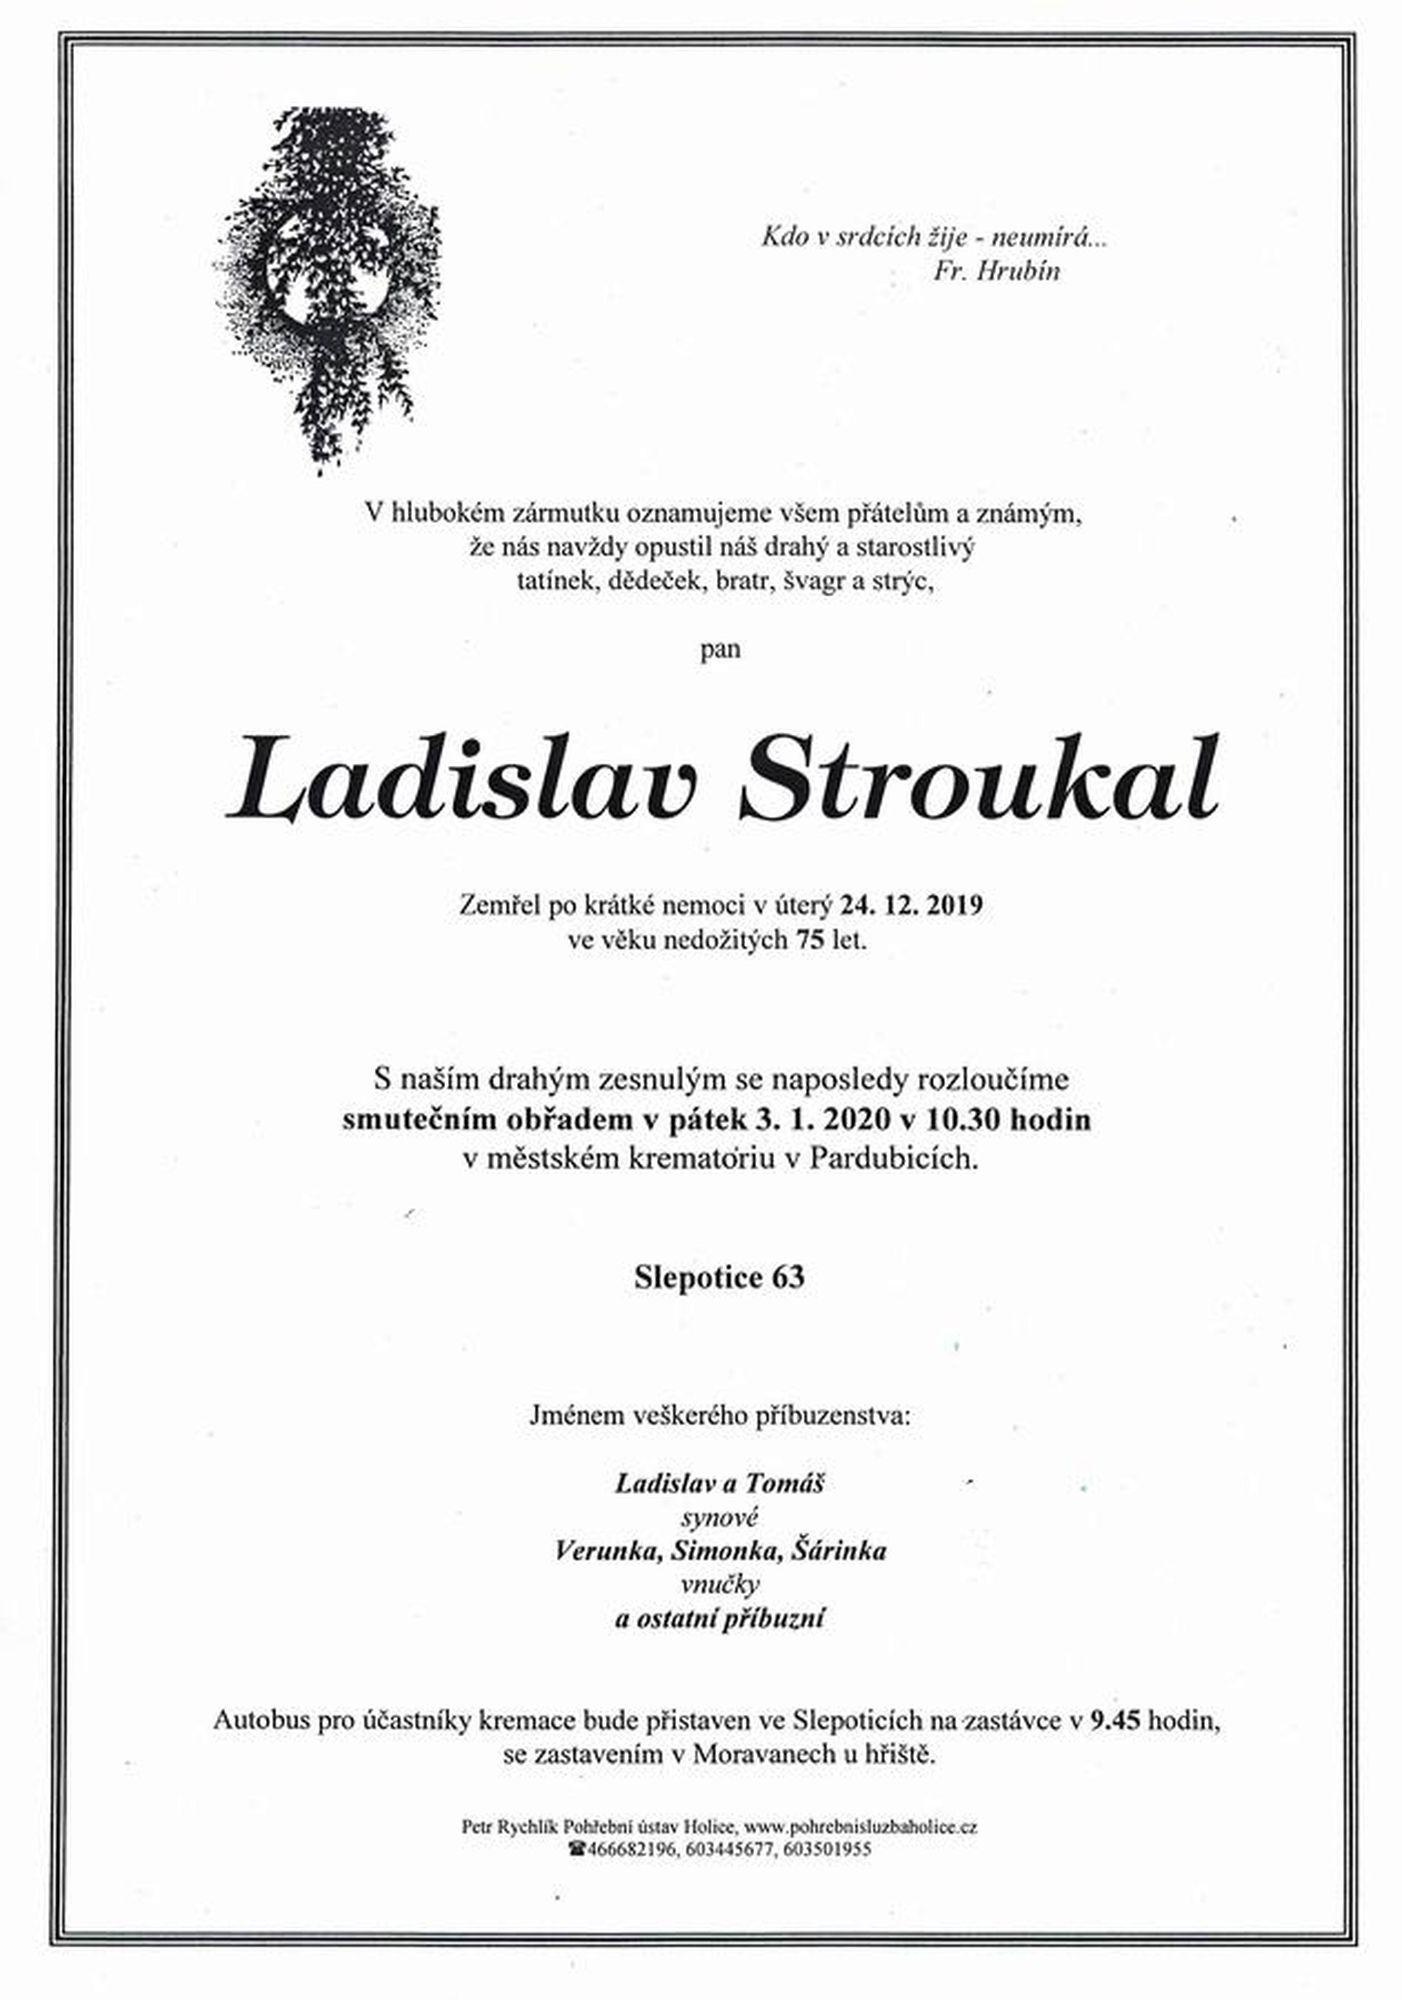 Ladislav Stroukal